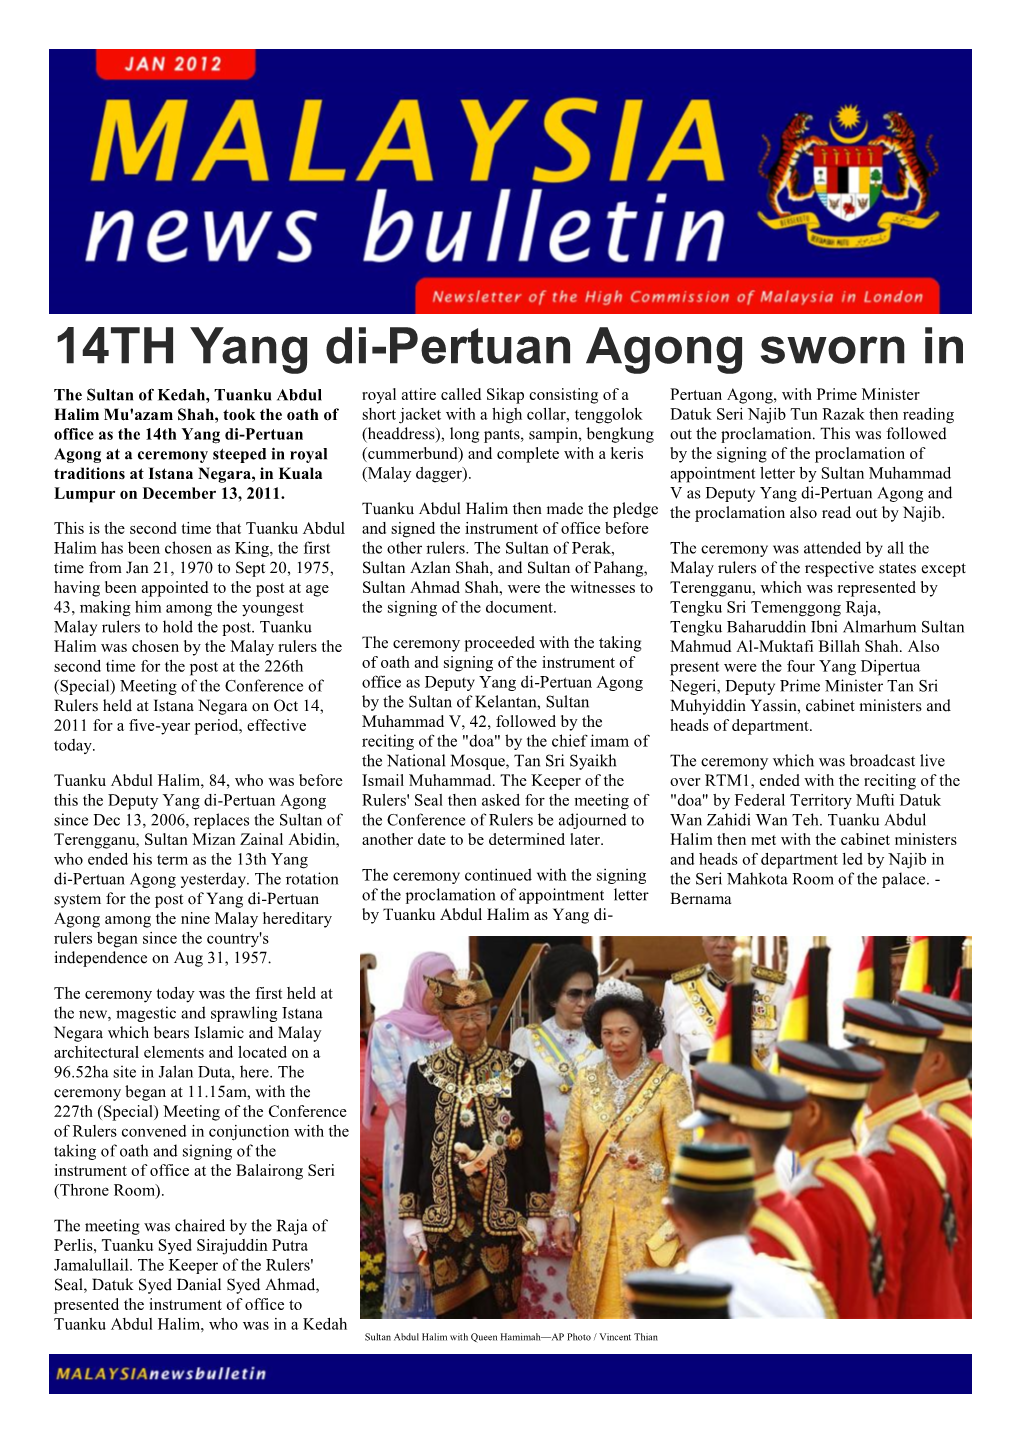 14TH Yang Di-Pertuan Agong Sworn In